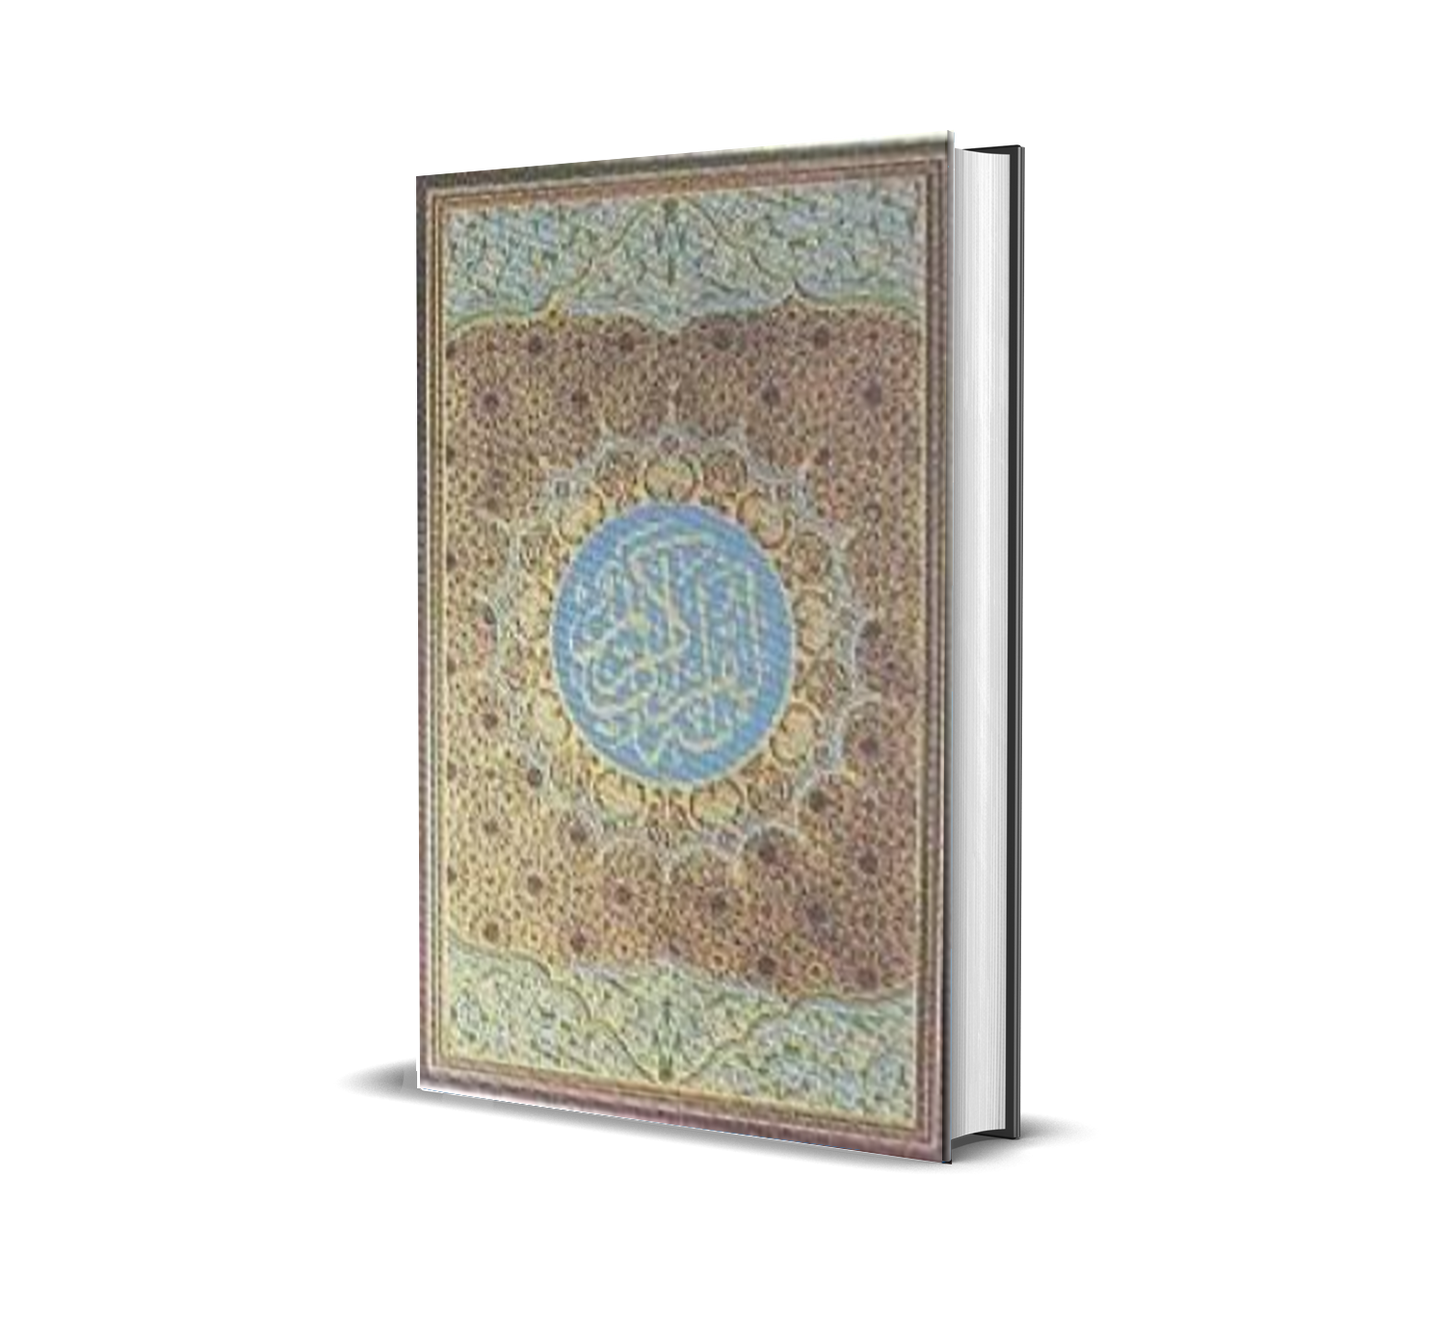 Al-Quran Osmani